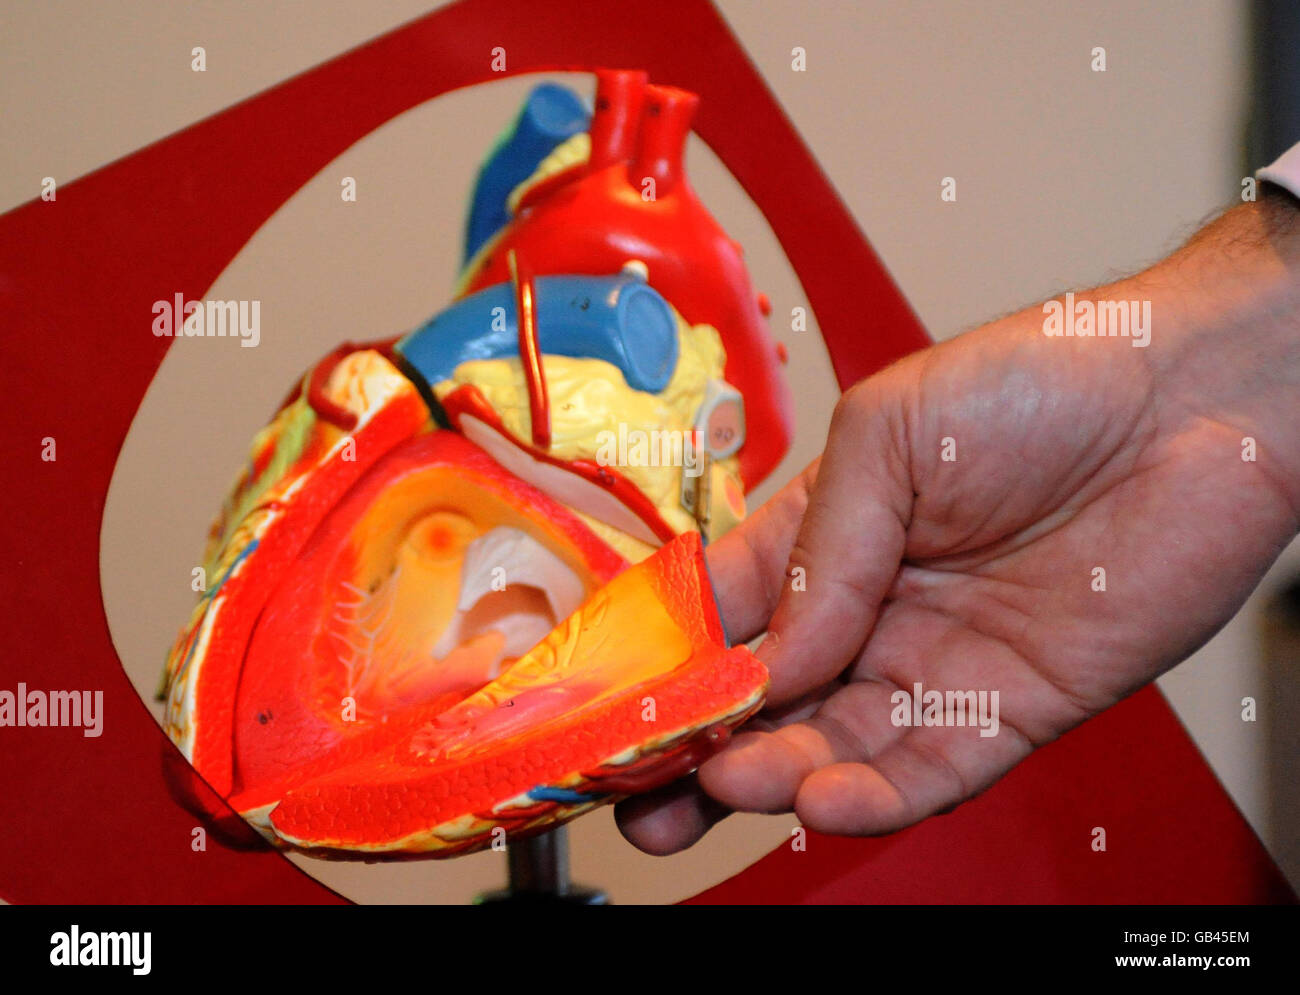 Consultant anesthésiste Dr Andrew Smith avec un modèle de démonstration traditionnel, au lancement de HeartWorks, le premier coeur virtuel pleinement fonctionnel, inventé pour aider à former les cardiologues et les médecins. Banque D'Images